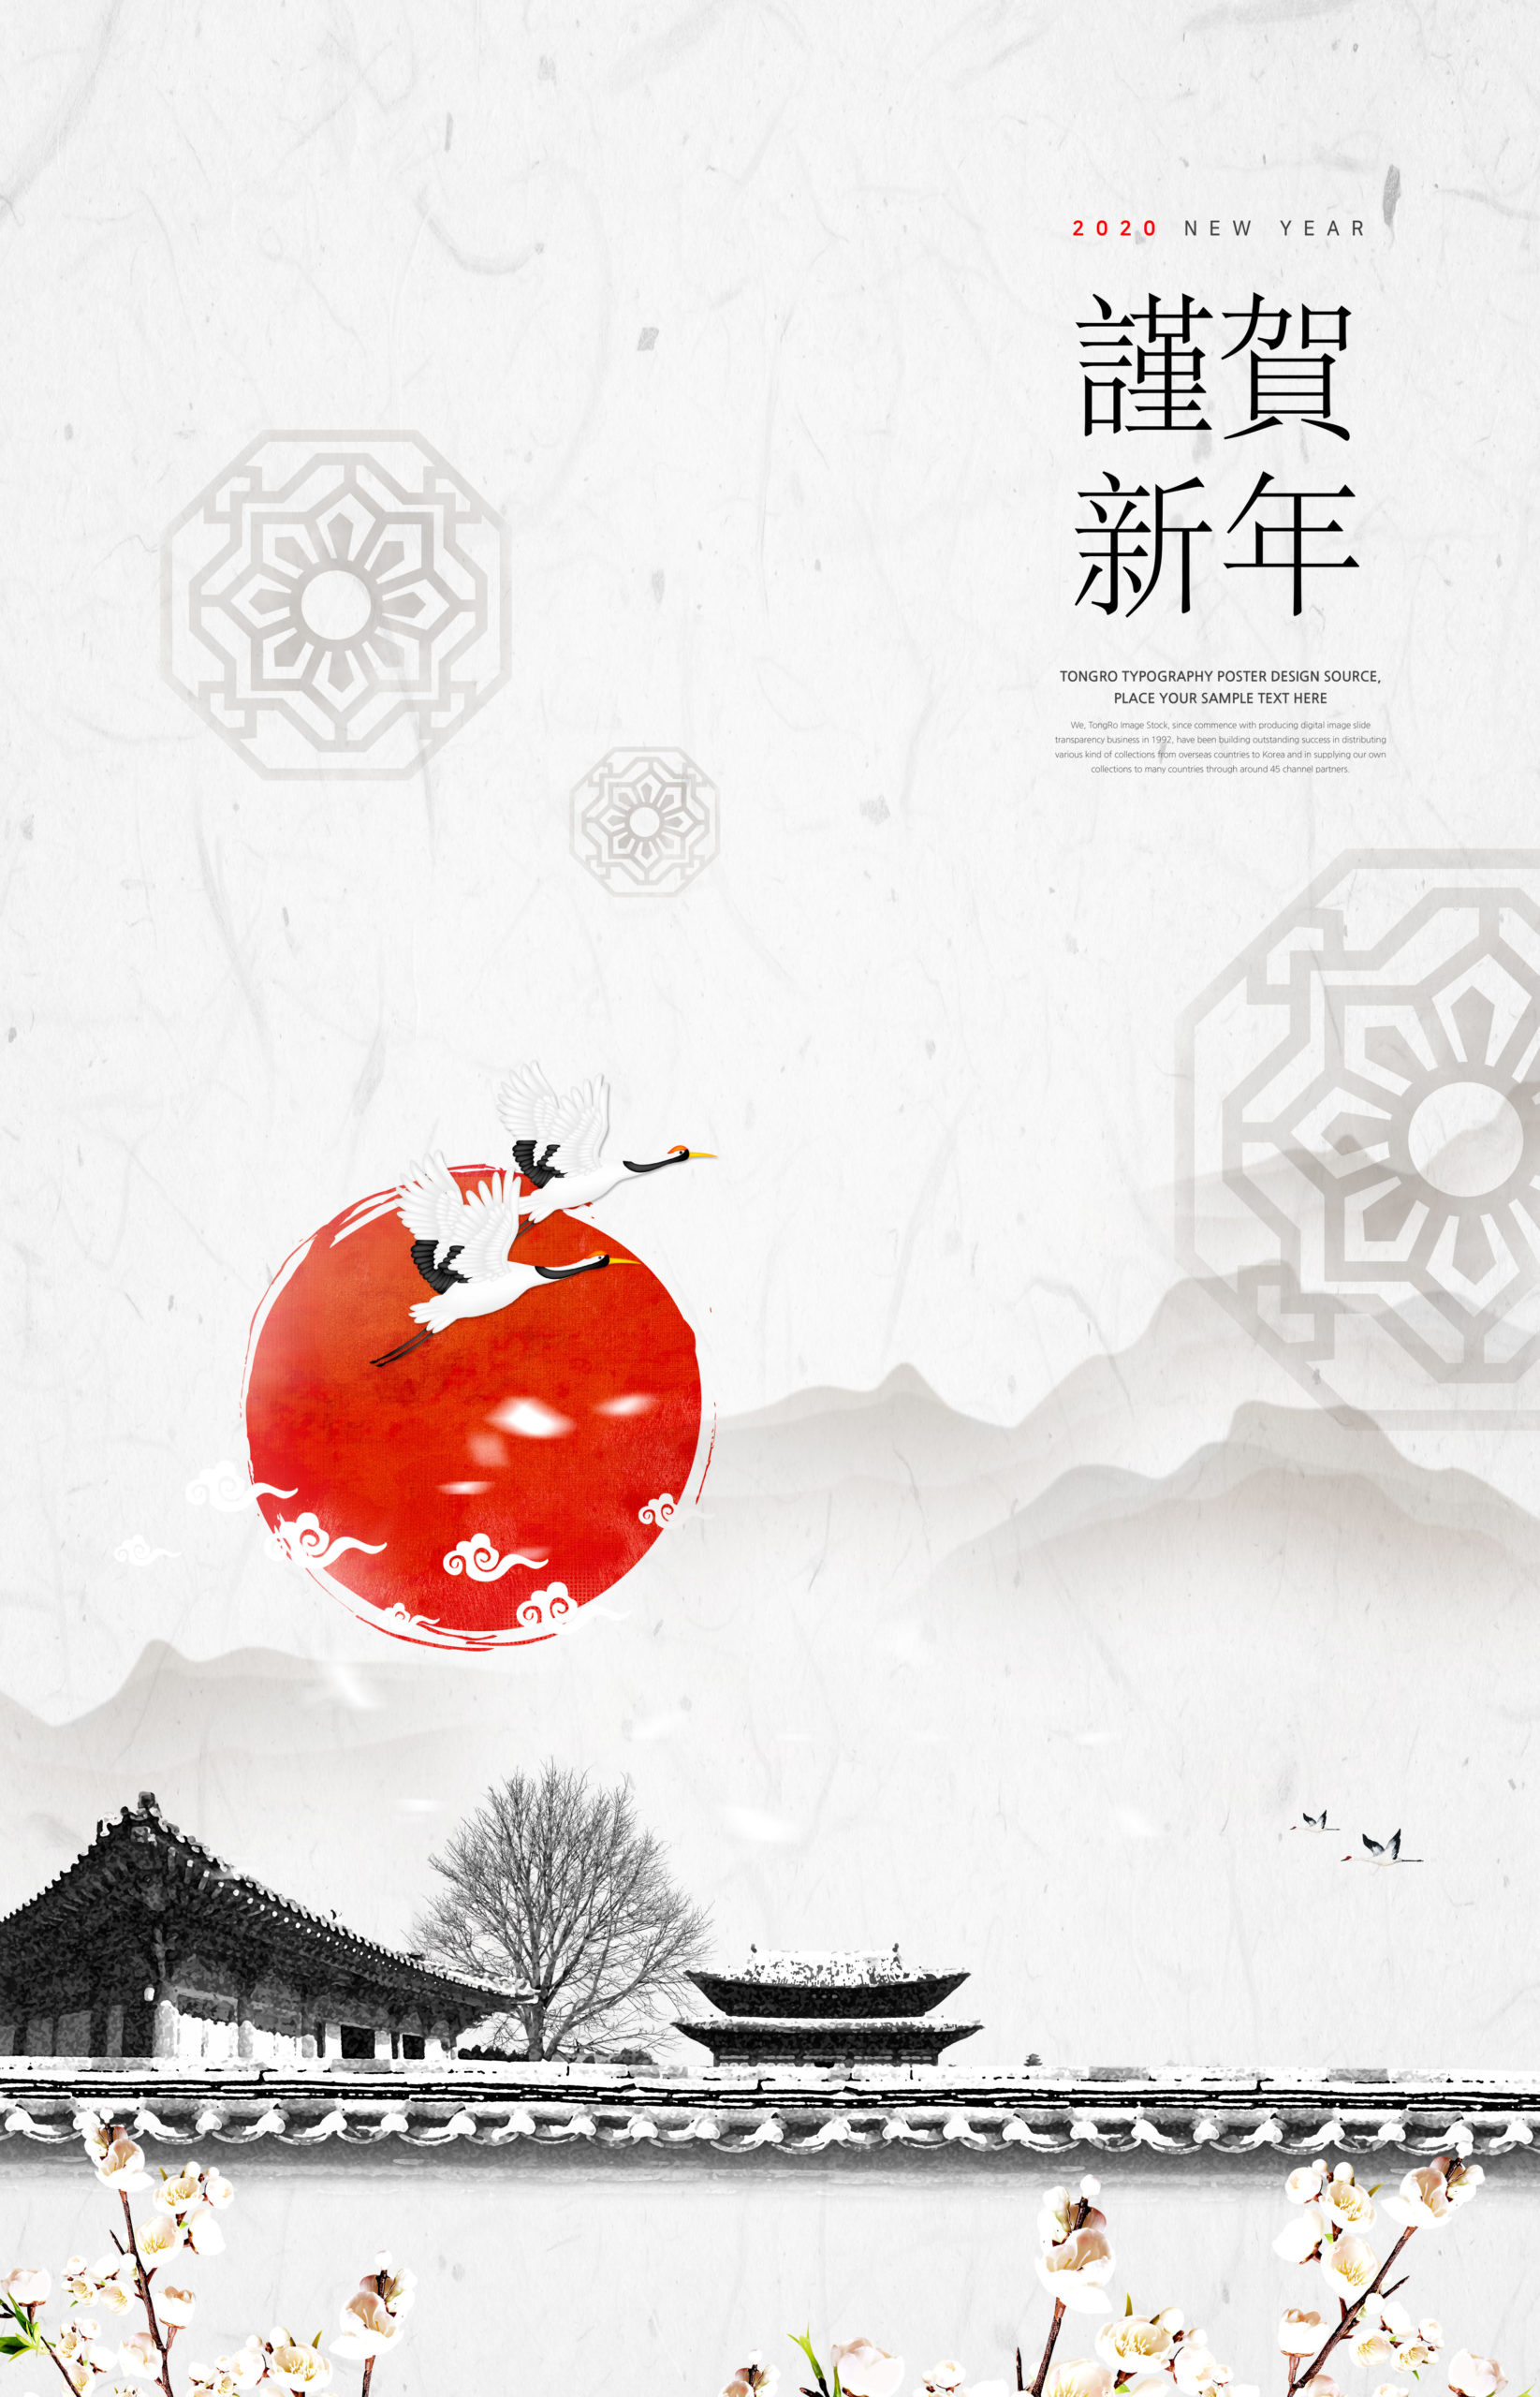 中式宫殿风格恭贺新年主题海报设计模板插图